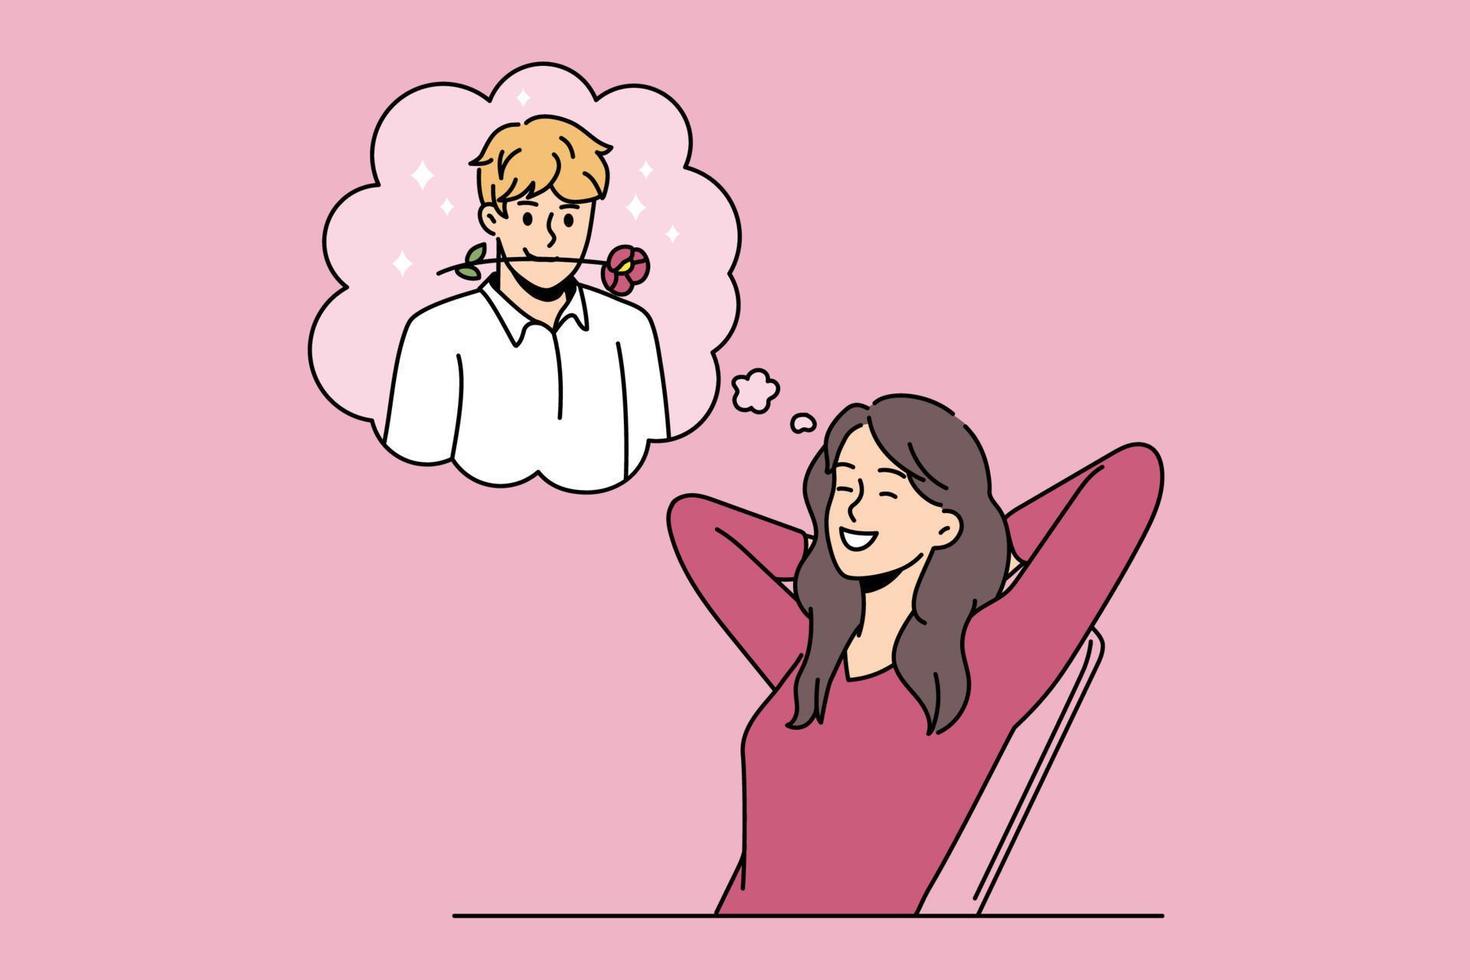 rencontres romantiques et rêver de concept d'amour. femme positive souriante assise et rêvant de son petit ami avec une fleur de rose dans la bouche illustration vectorielle vecteur